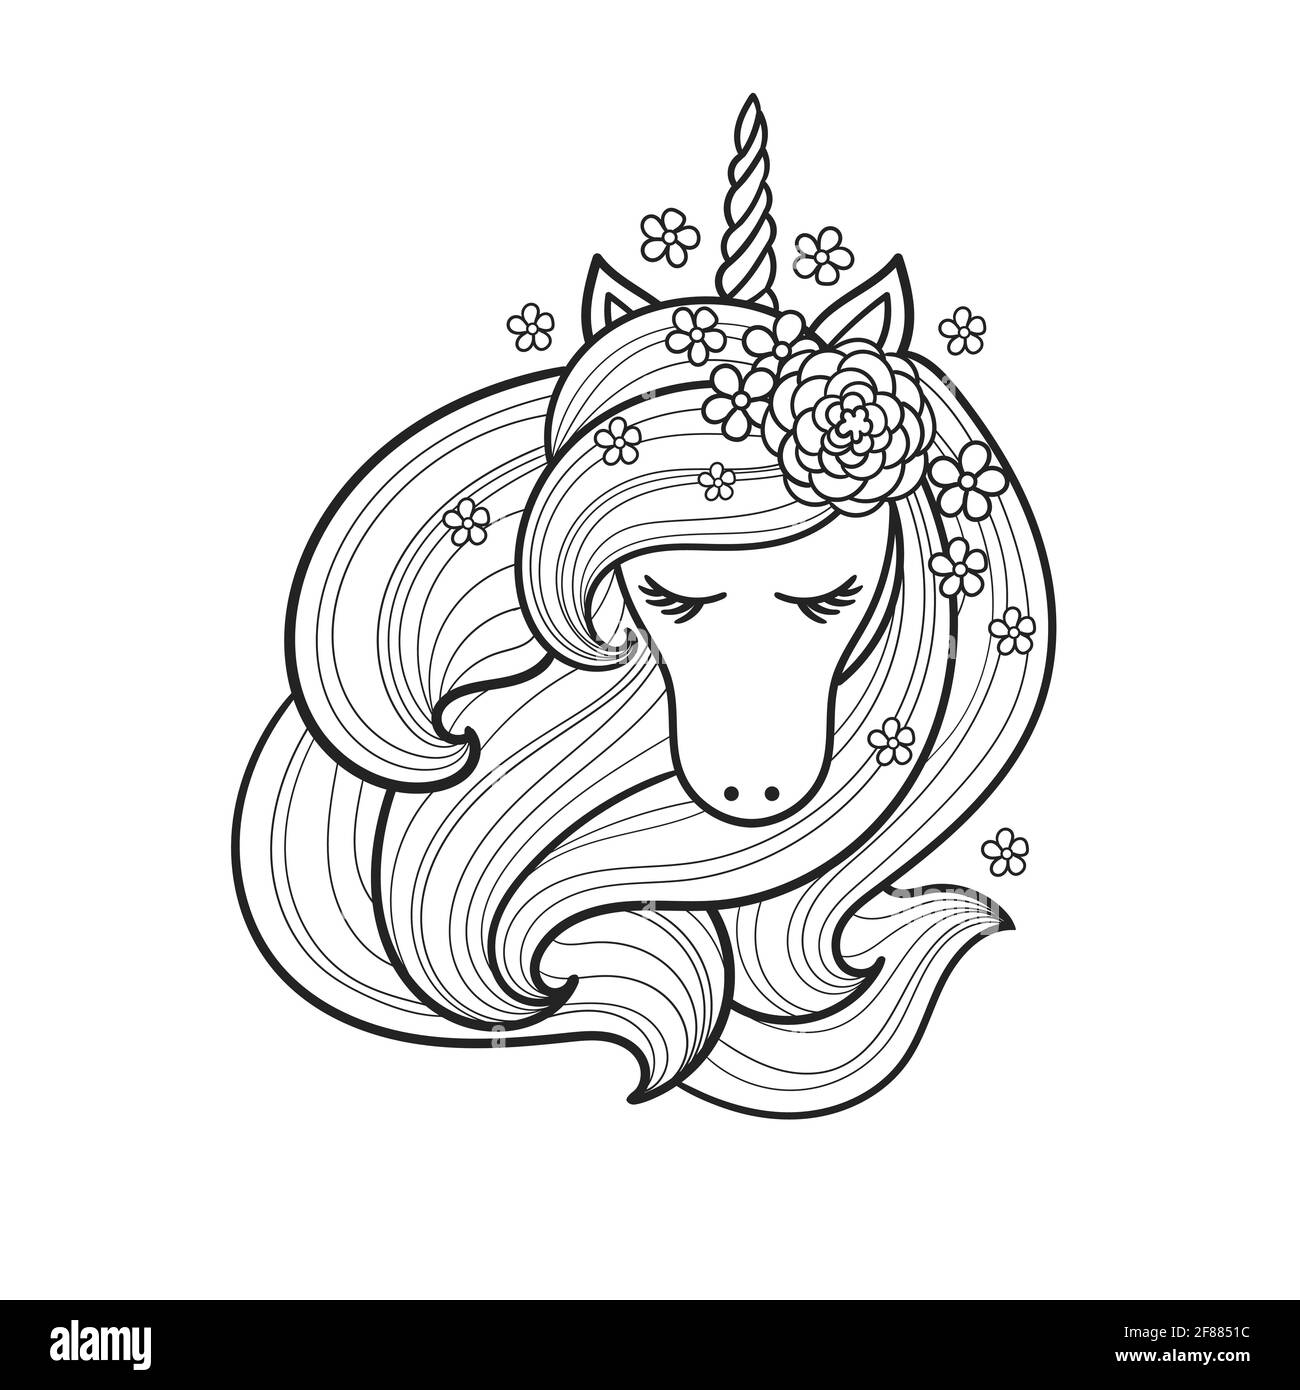 La testa di un unicorno con una lunga mane. Disegno lineare in bianco e nero. Vettore Illustrazione Vettoriale